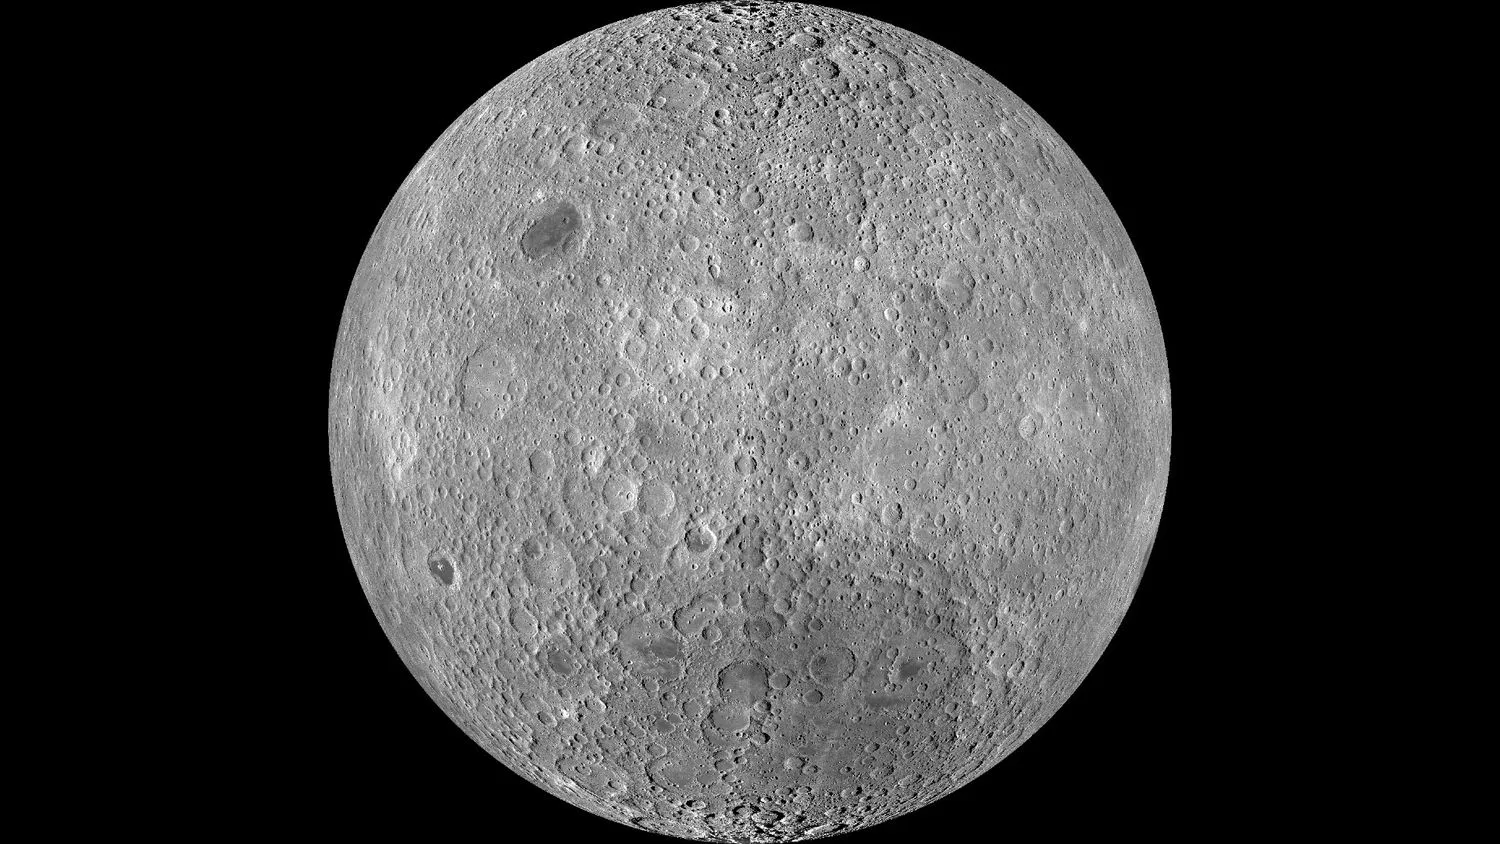 die graue, zerkratzte Oberfläche des Mondes